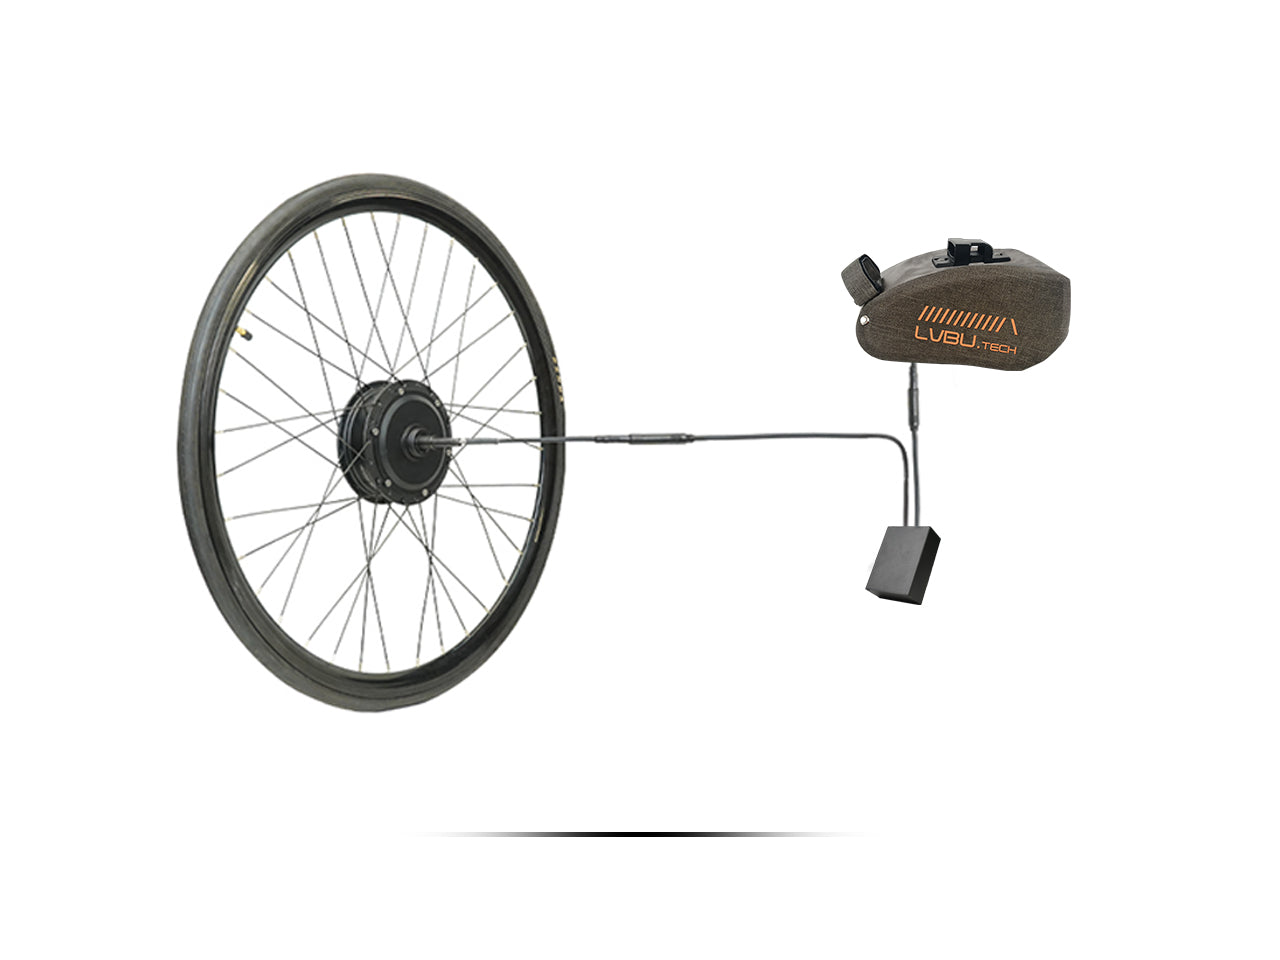 Kit de conversión de bicicleta eléctrica Serie KD